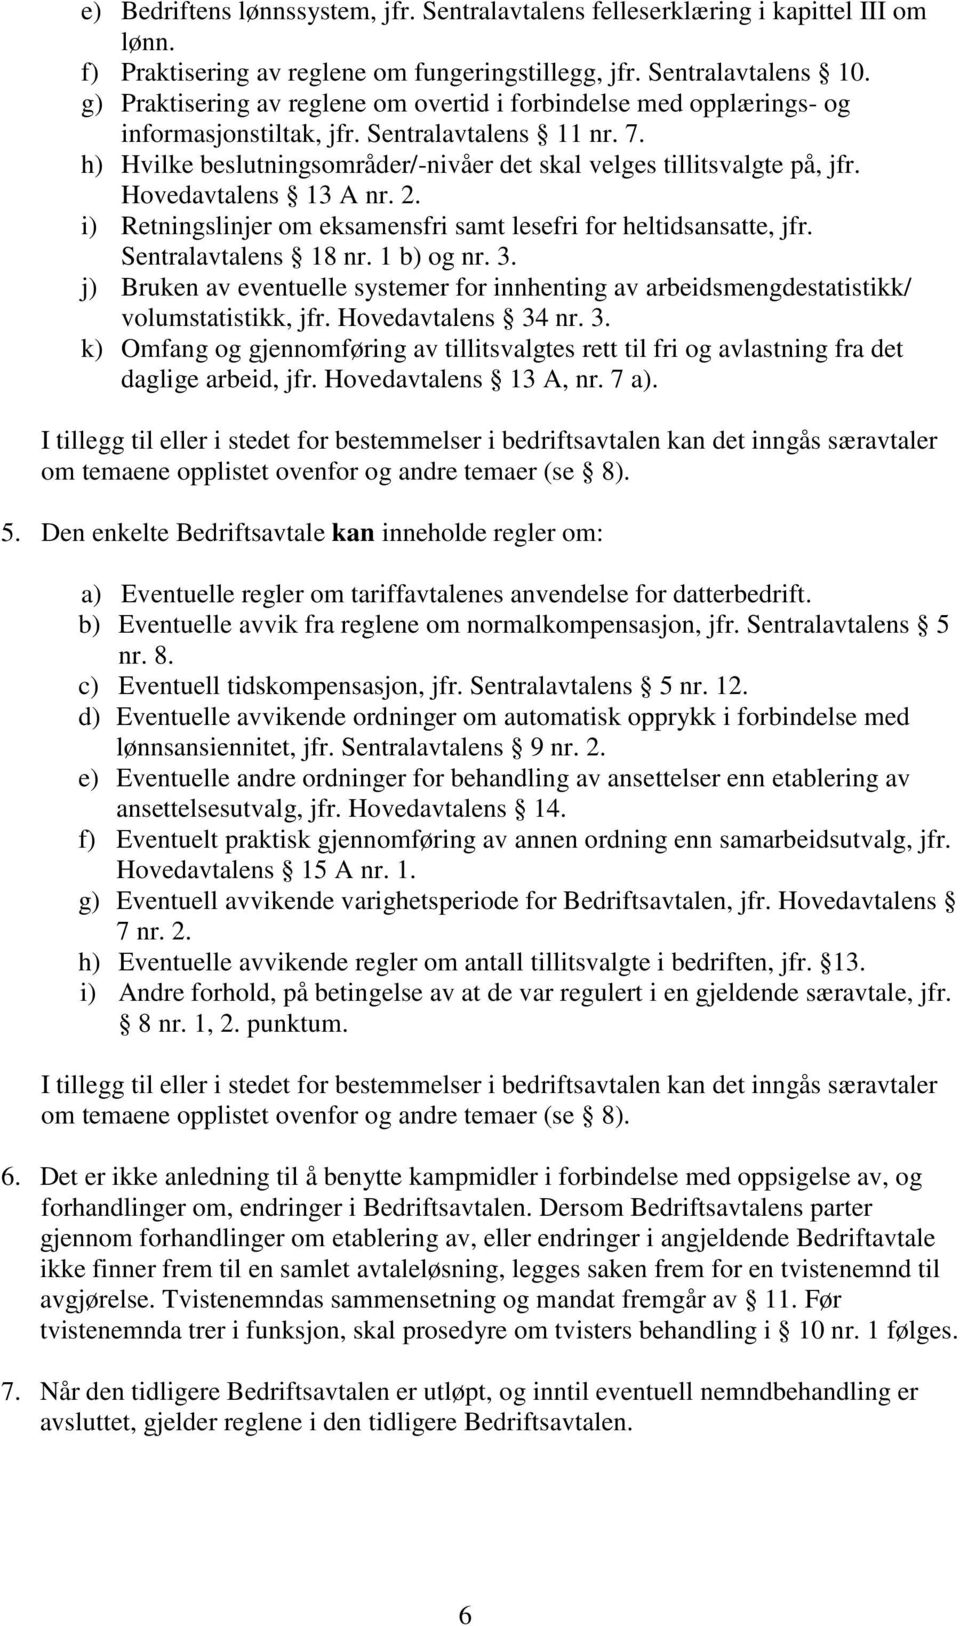 Hovedavtalens 13 A nr. 2. i) Retningslinjer om eksamensfri samt lesefri for heltidsansatte, jfr. Sentralavtalens 18 nr. 1 b) og nr. 3.